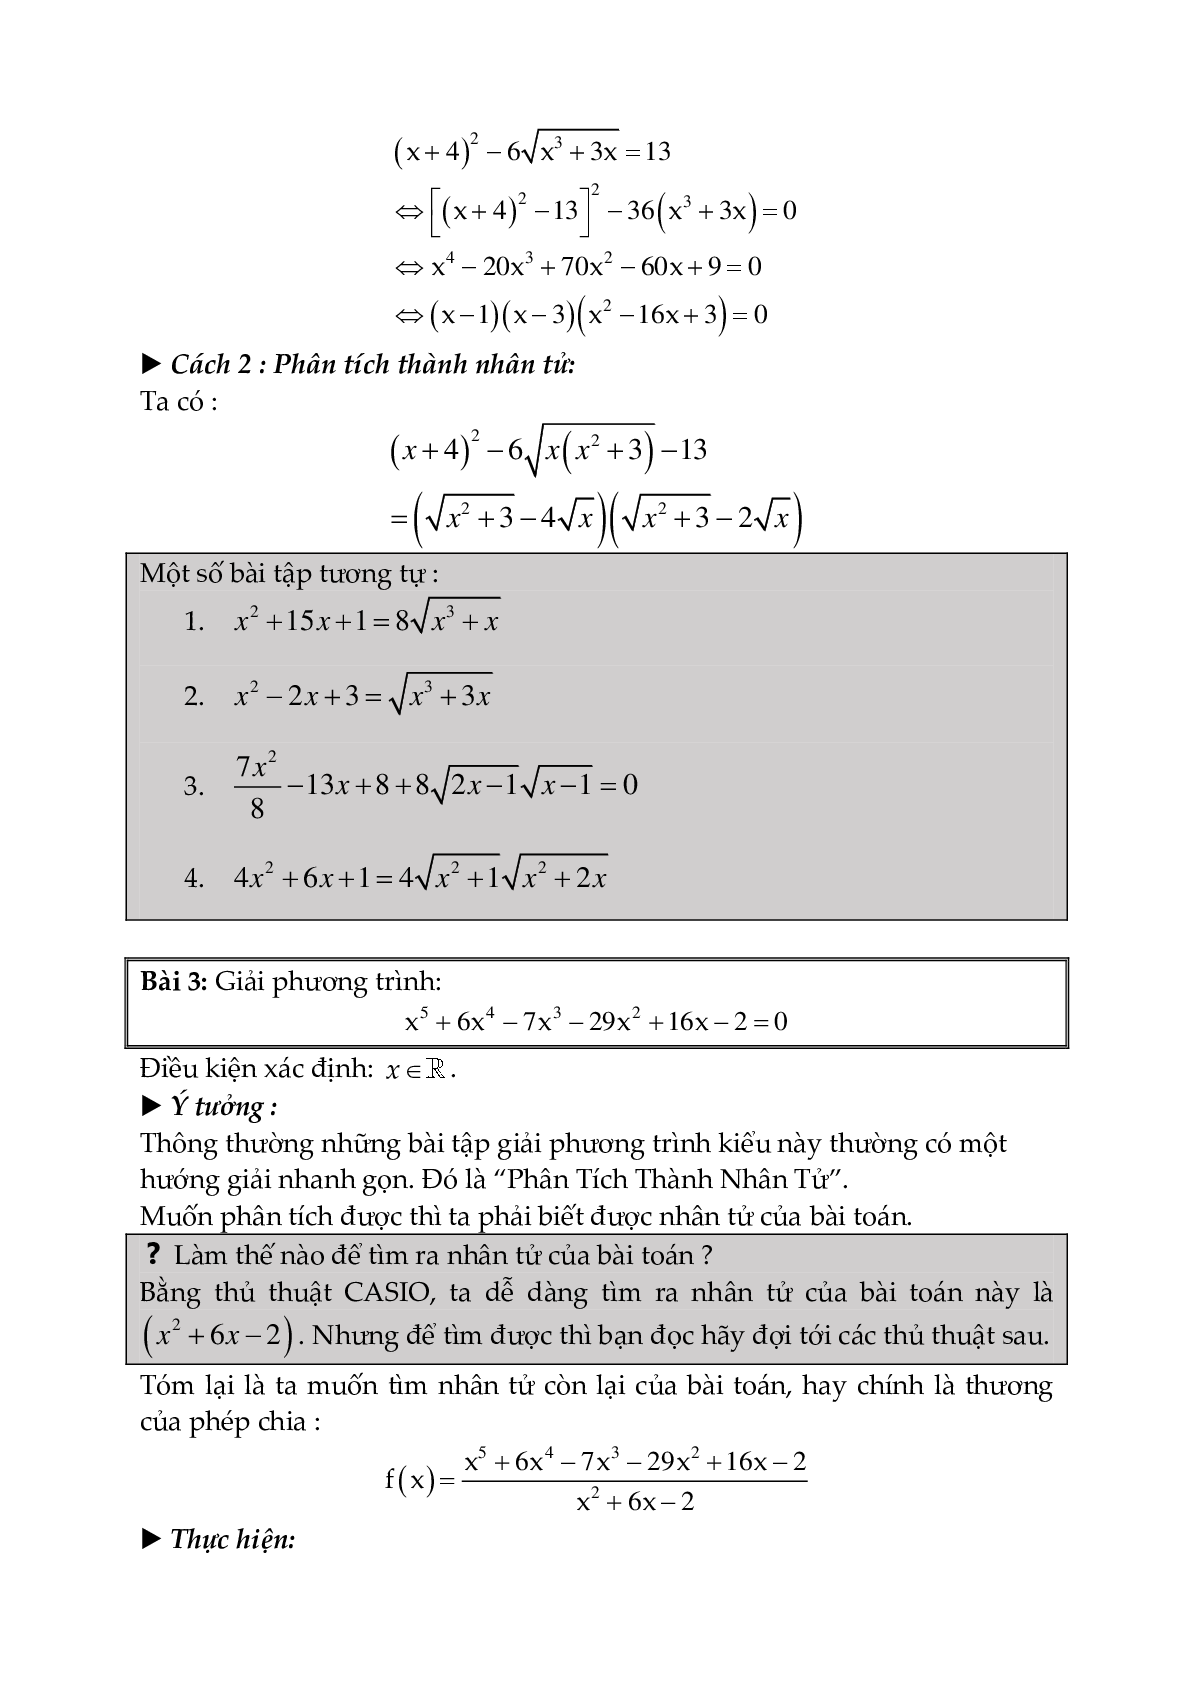 Kĩ năng sử dụng máy tính Casio trong giải toán (trang 7)